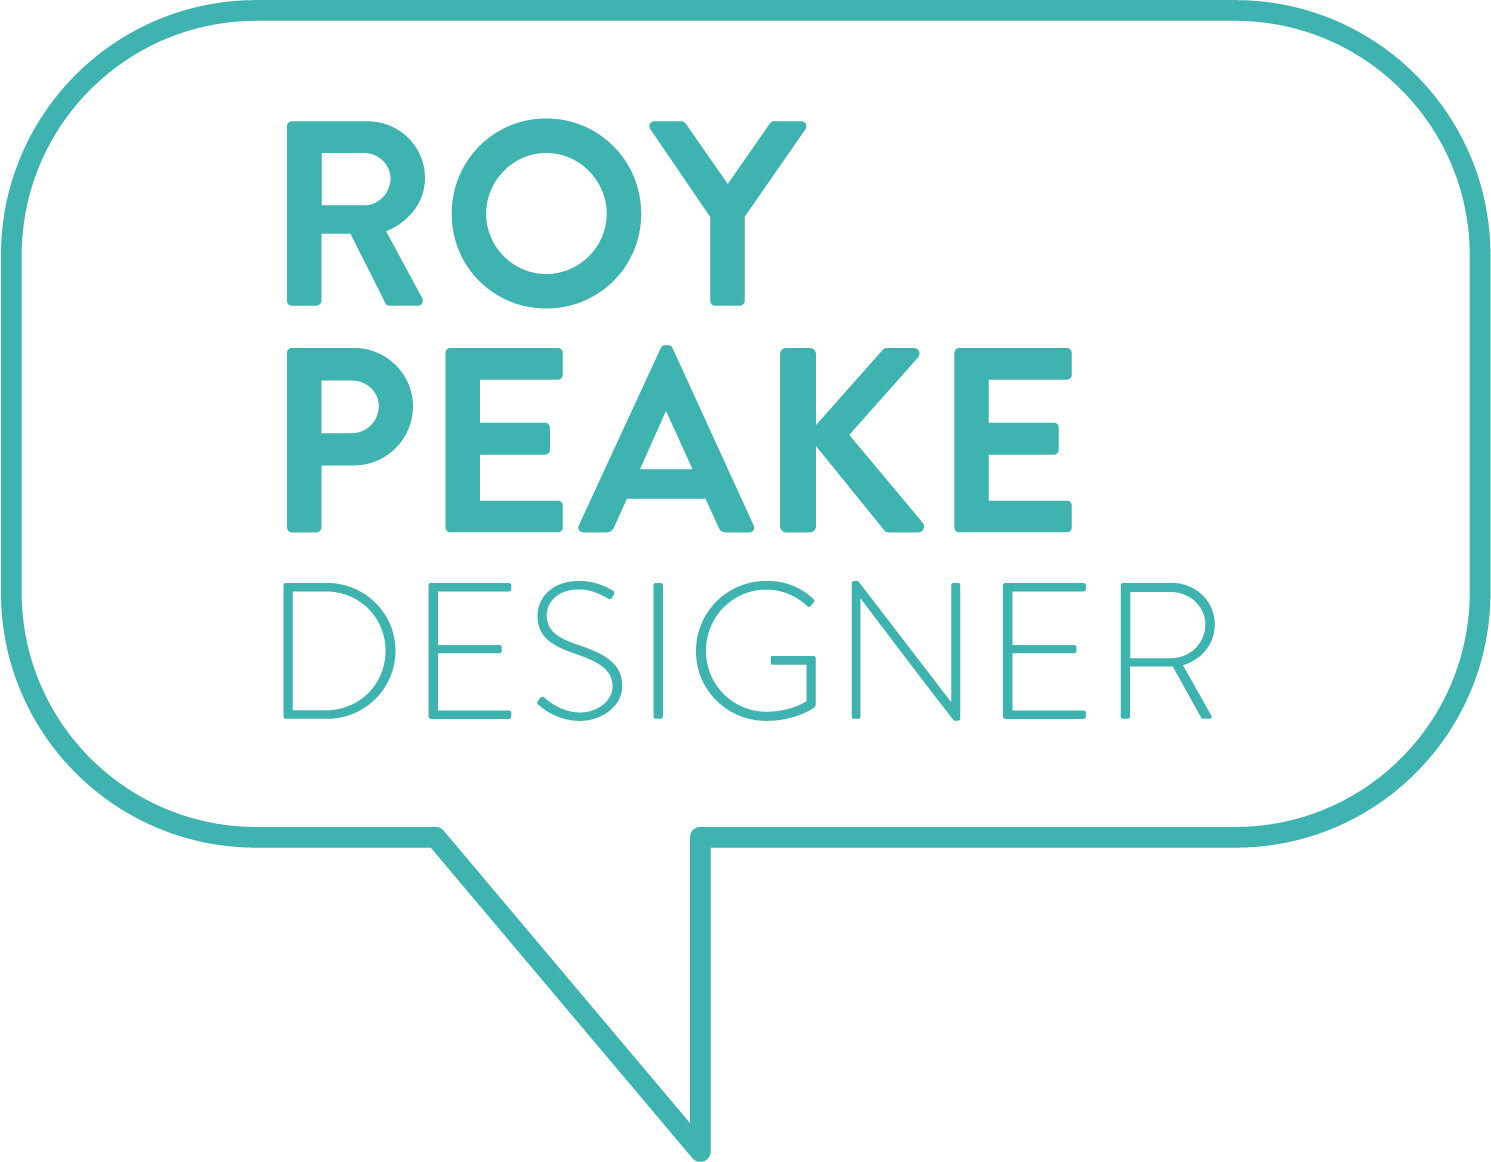 Roy Peake